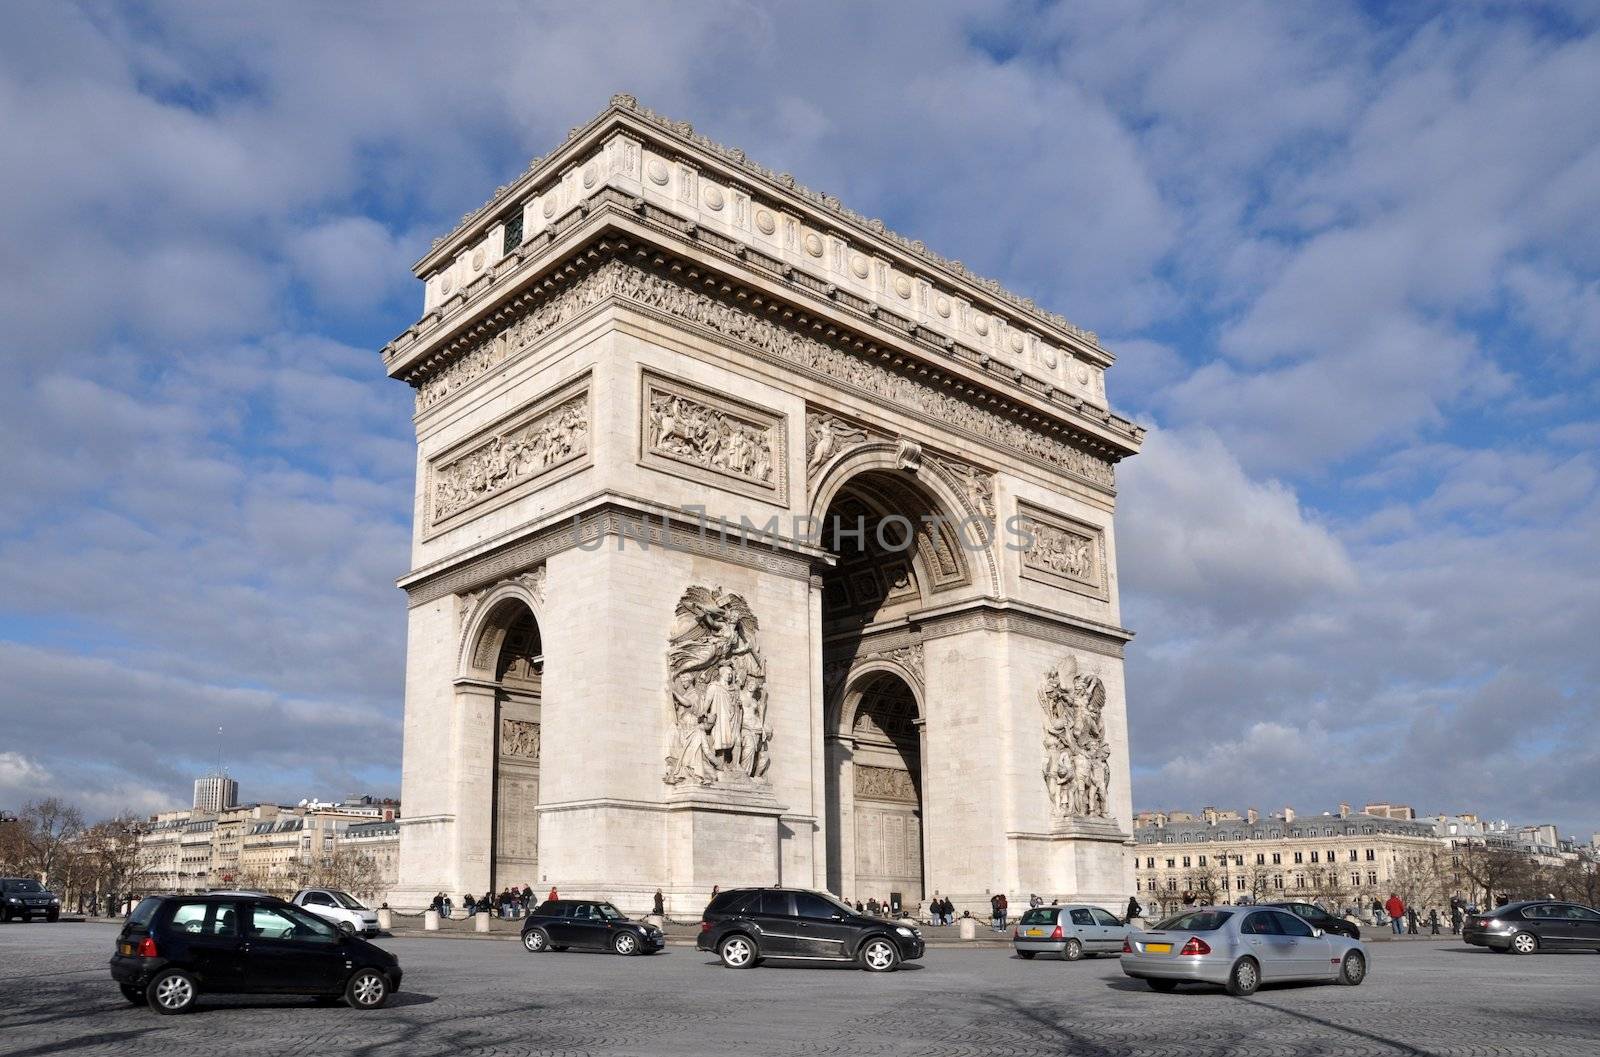 The famous Arc de triomphe in Paris, on the top of Champs Elysées avenue